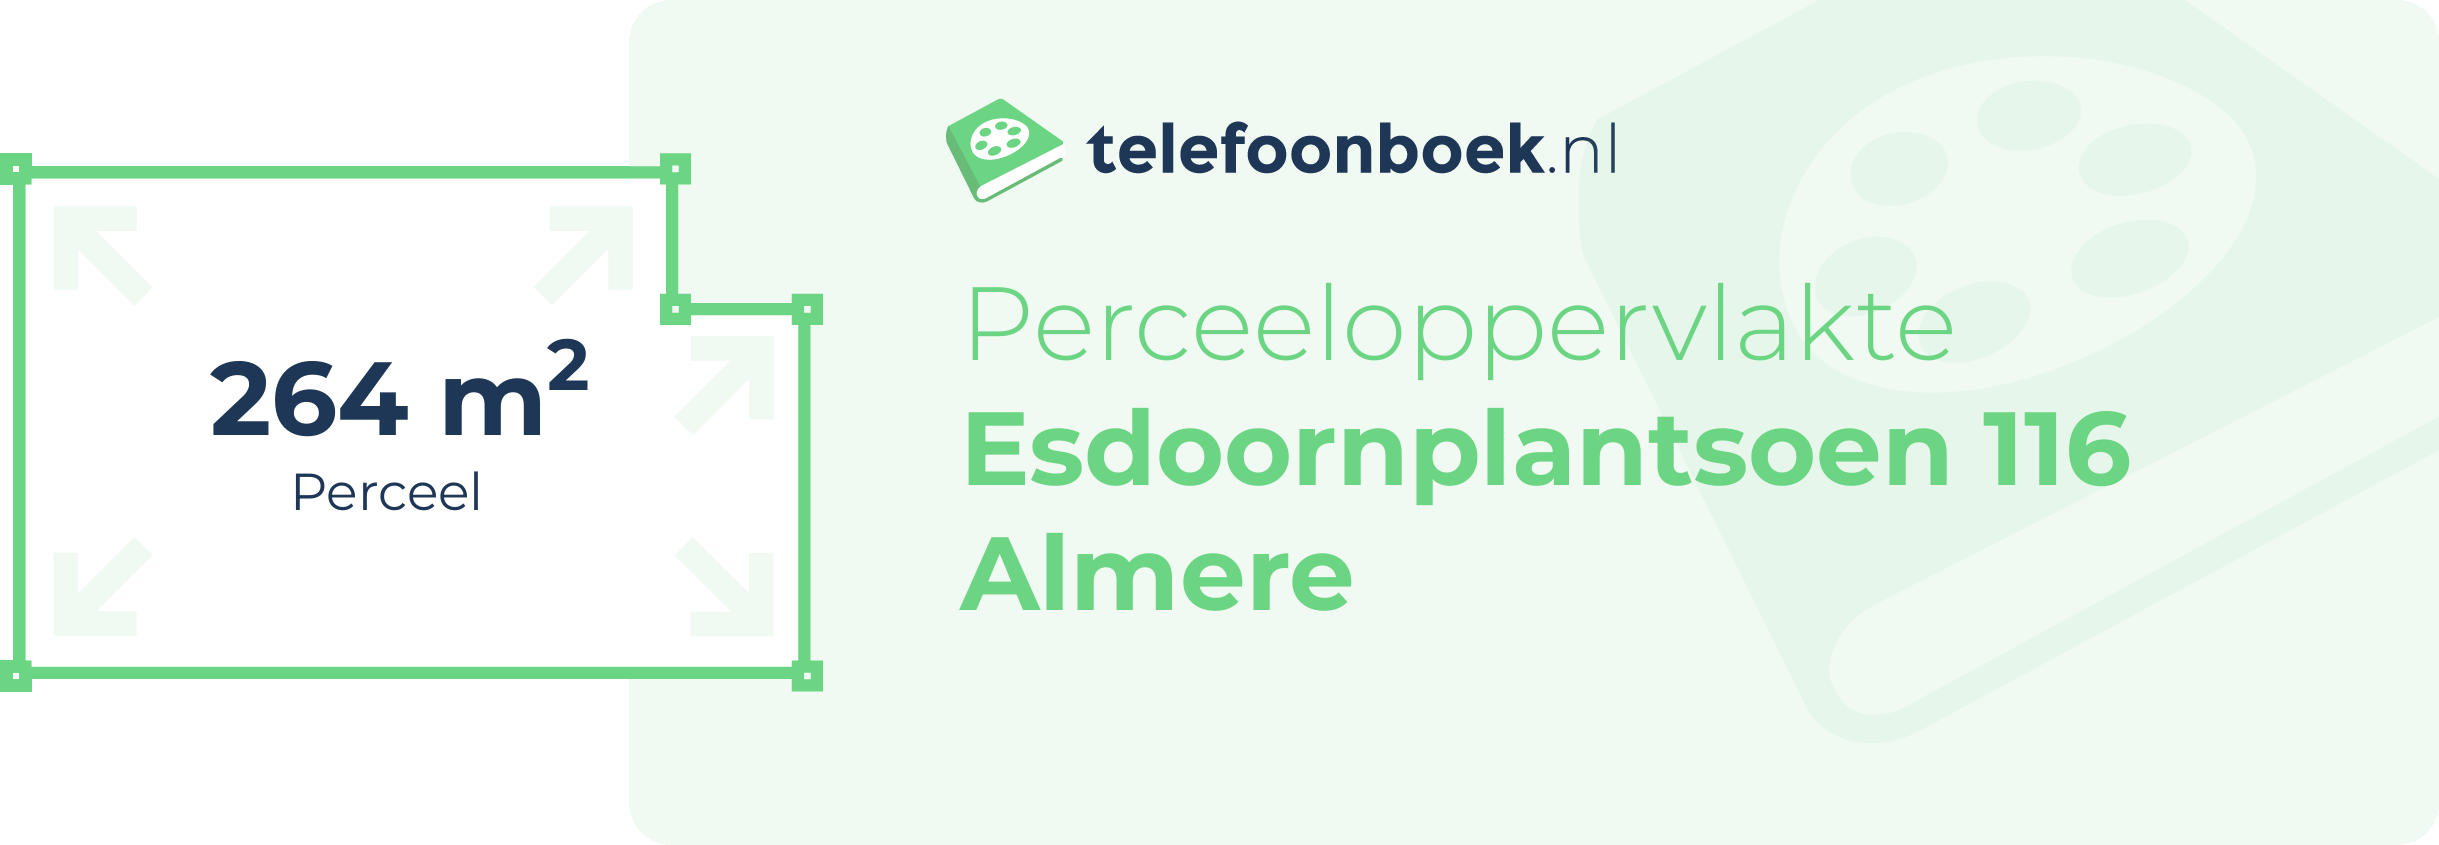 Perceeloppervlakte Esdoornplantsoen 116 Almere